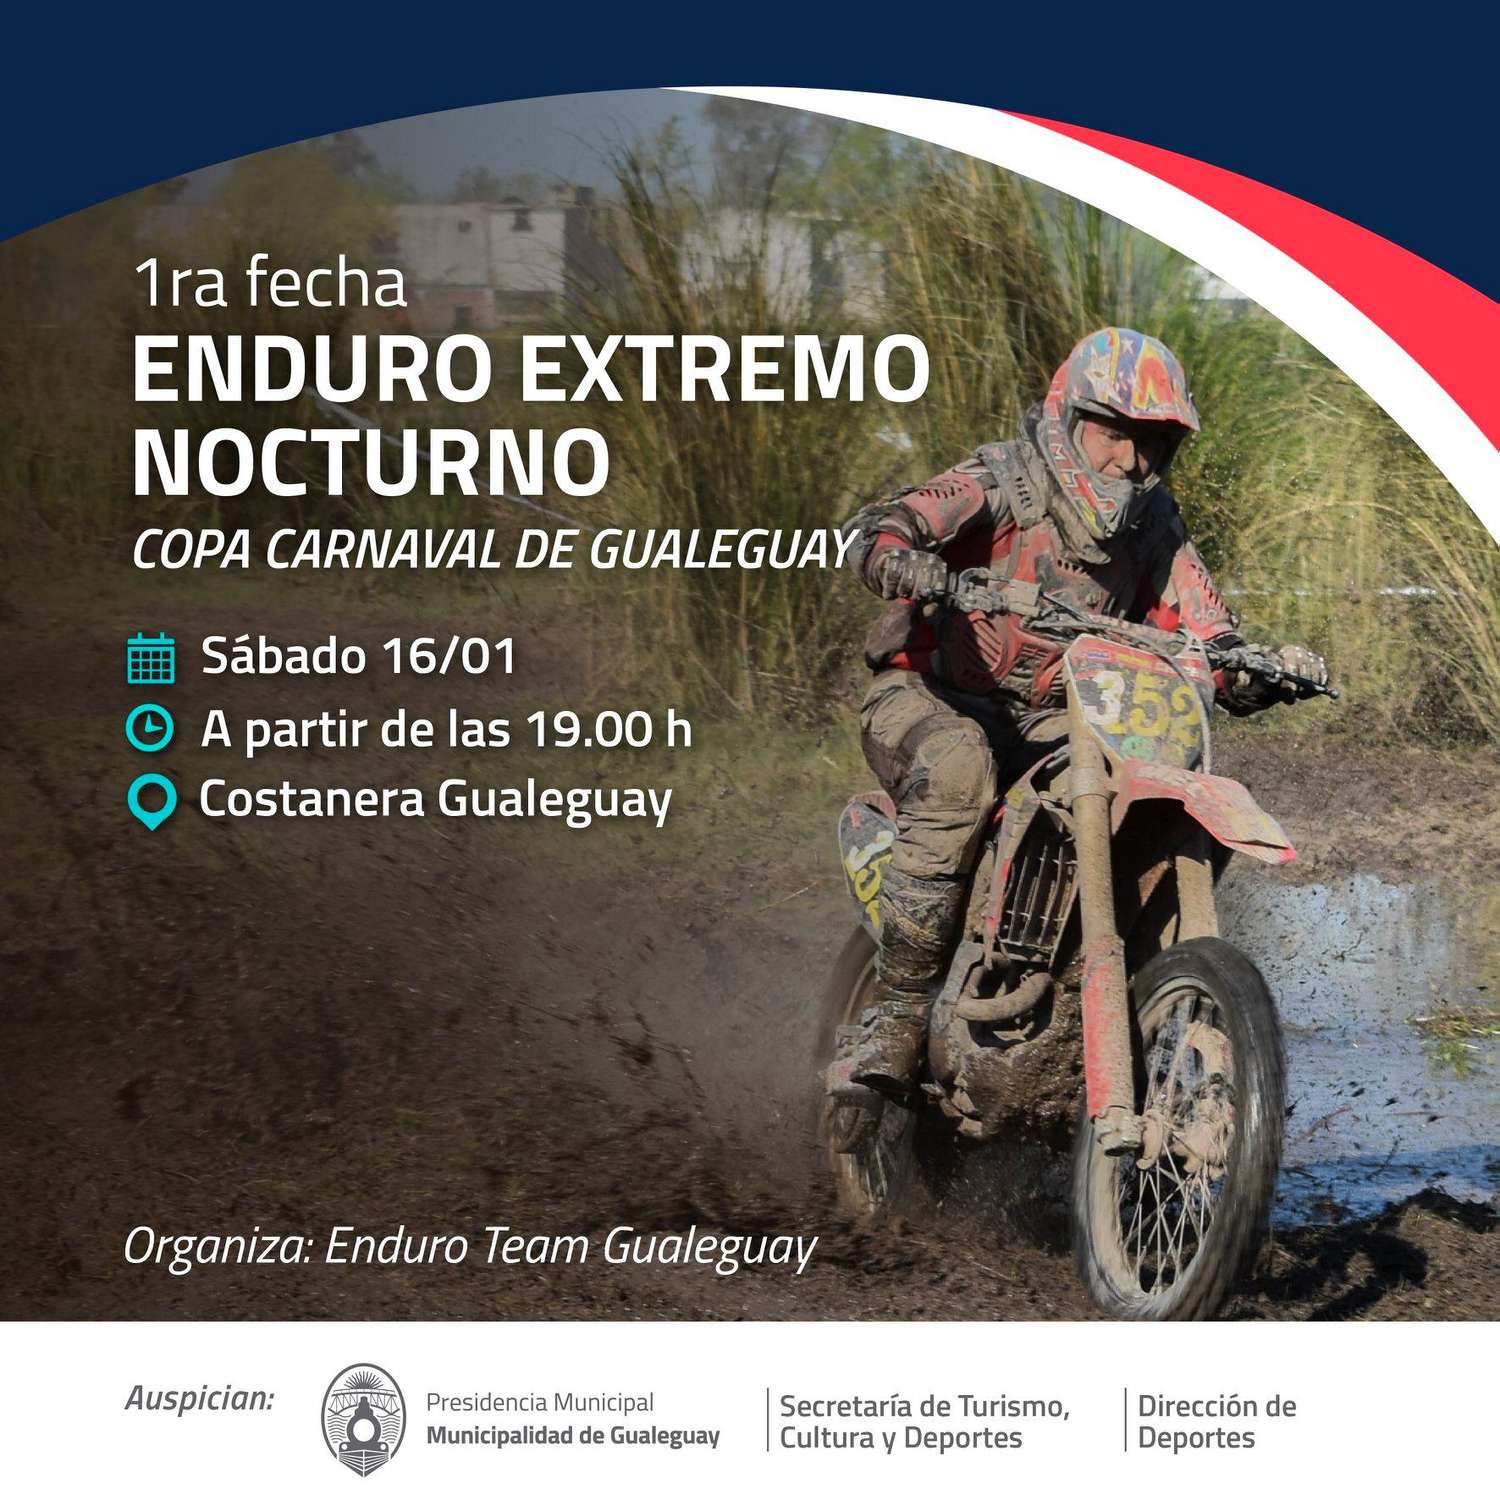  Se realizará la 1° Fecha Enduro Extremo Nocturno Gualeguay